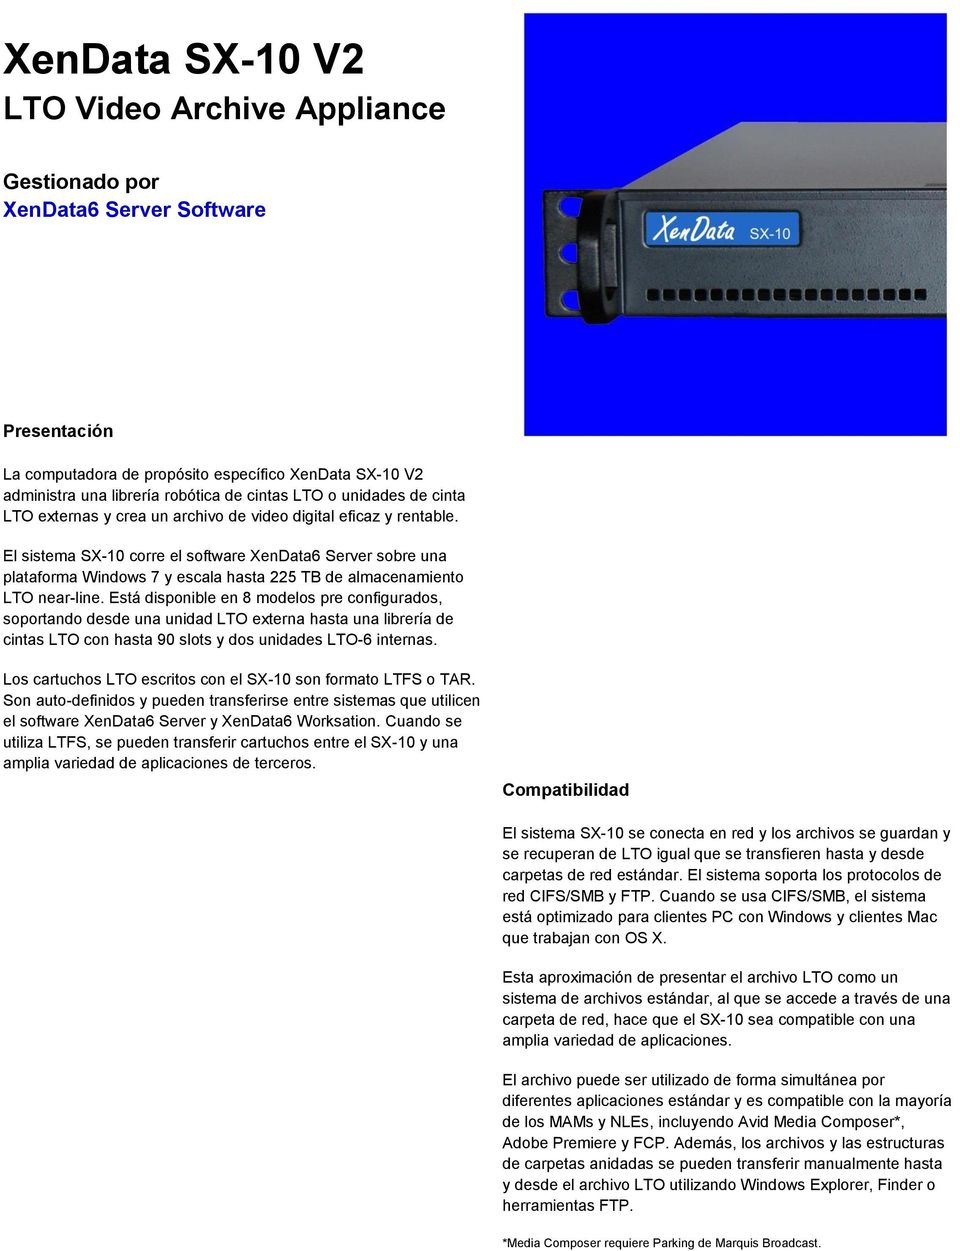 El sistema SX-10 corre el software XenData6 Server sobre una plataforma Windows 7 y escala hasta 225 TB de almacenamiento LTO near-line.